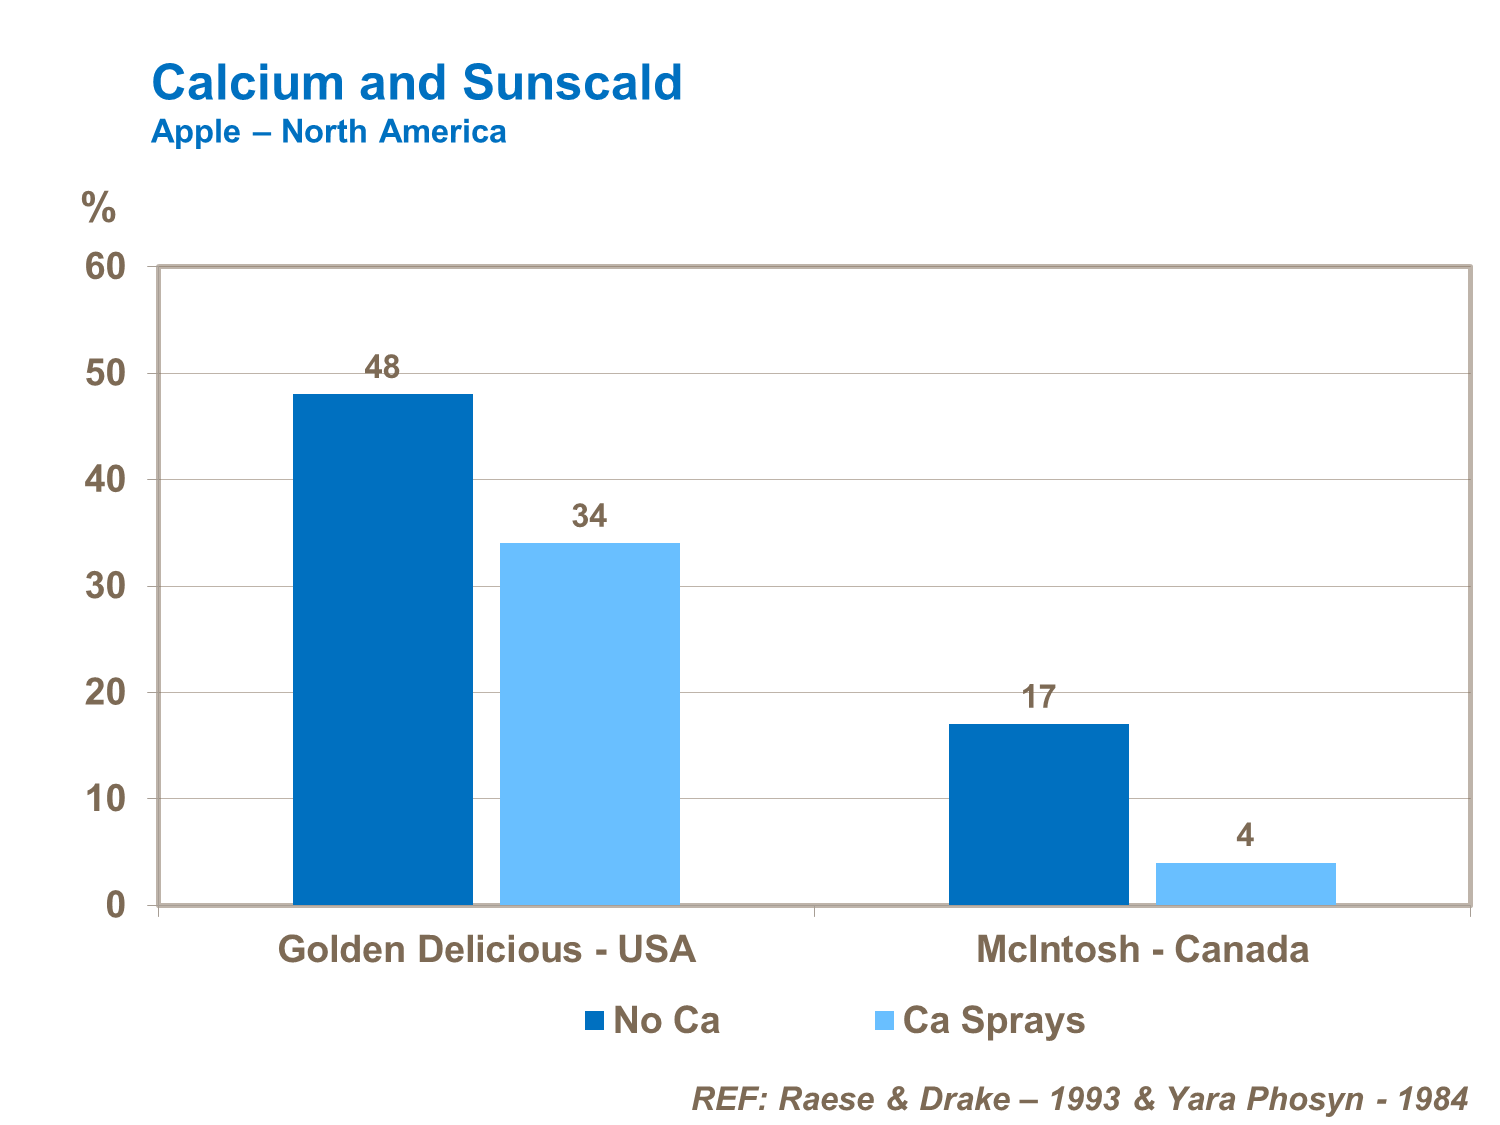 Calcium and sunscald